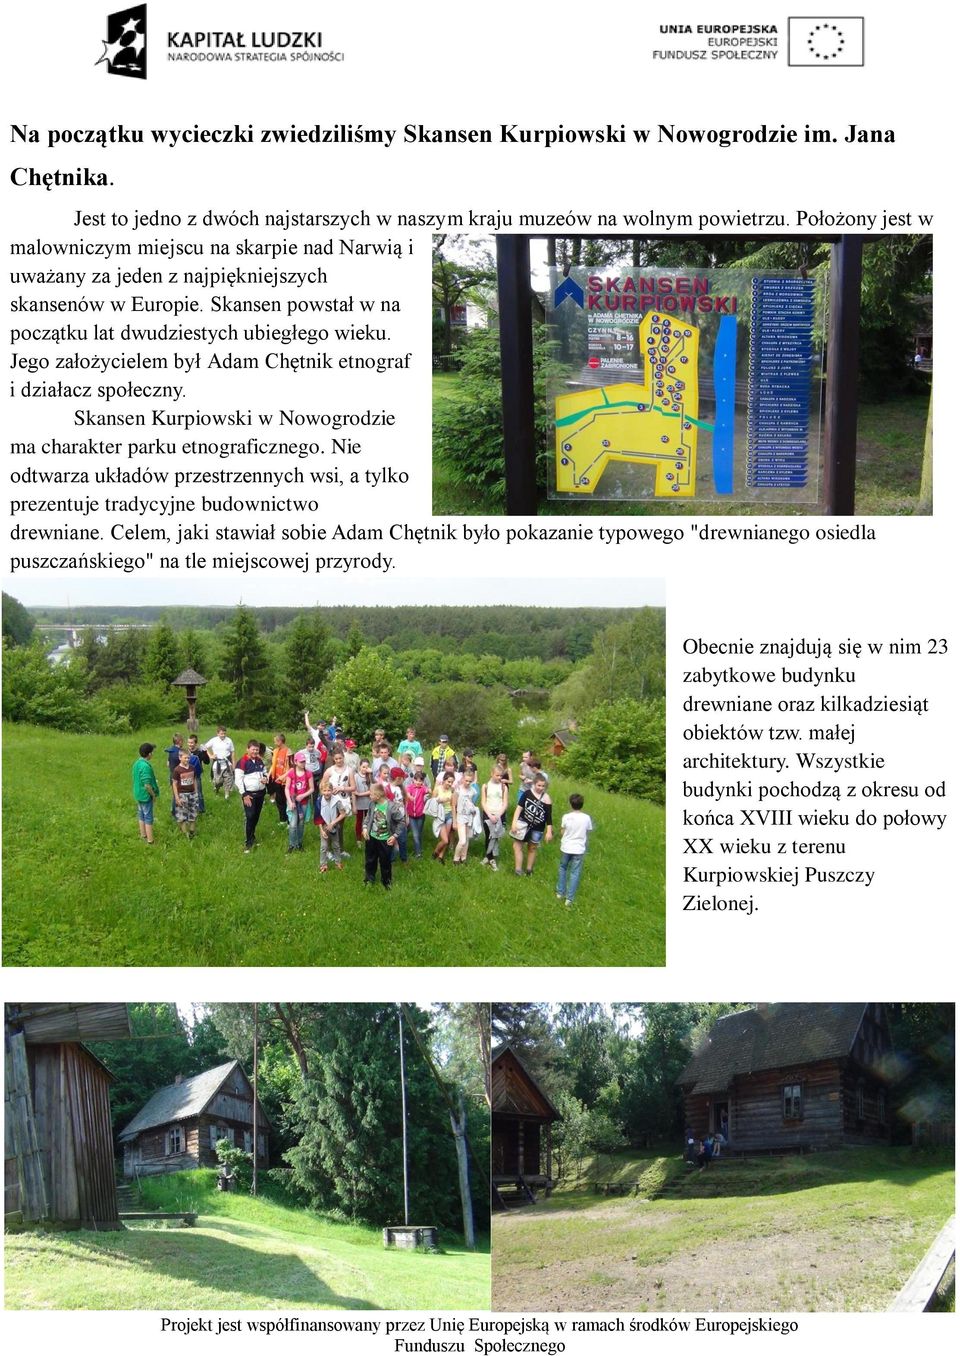 Jego założycielem był Adam Chętnik etnograf i działacz społeczny. Skansen Kurpiowski w Nowogrodzie ma charakter parku etnograficznego.